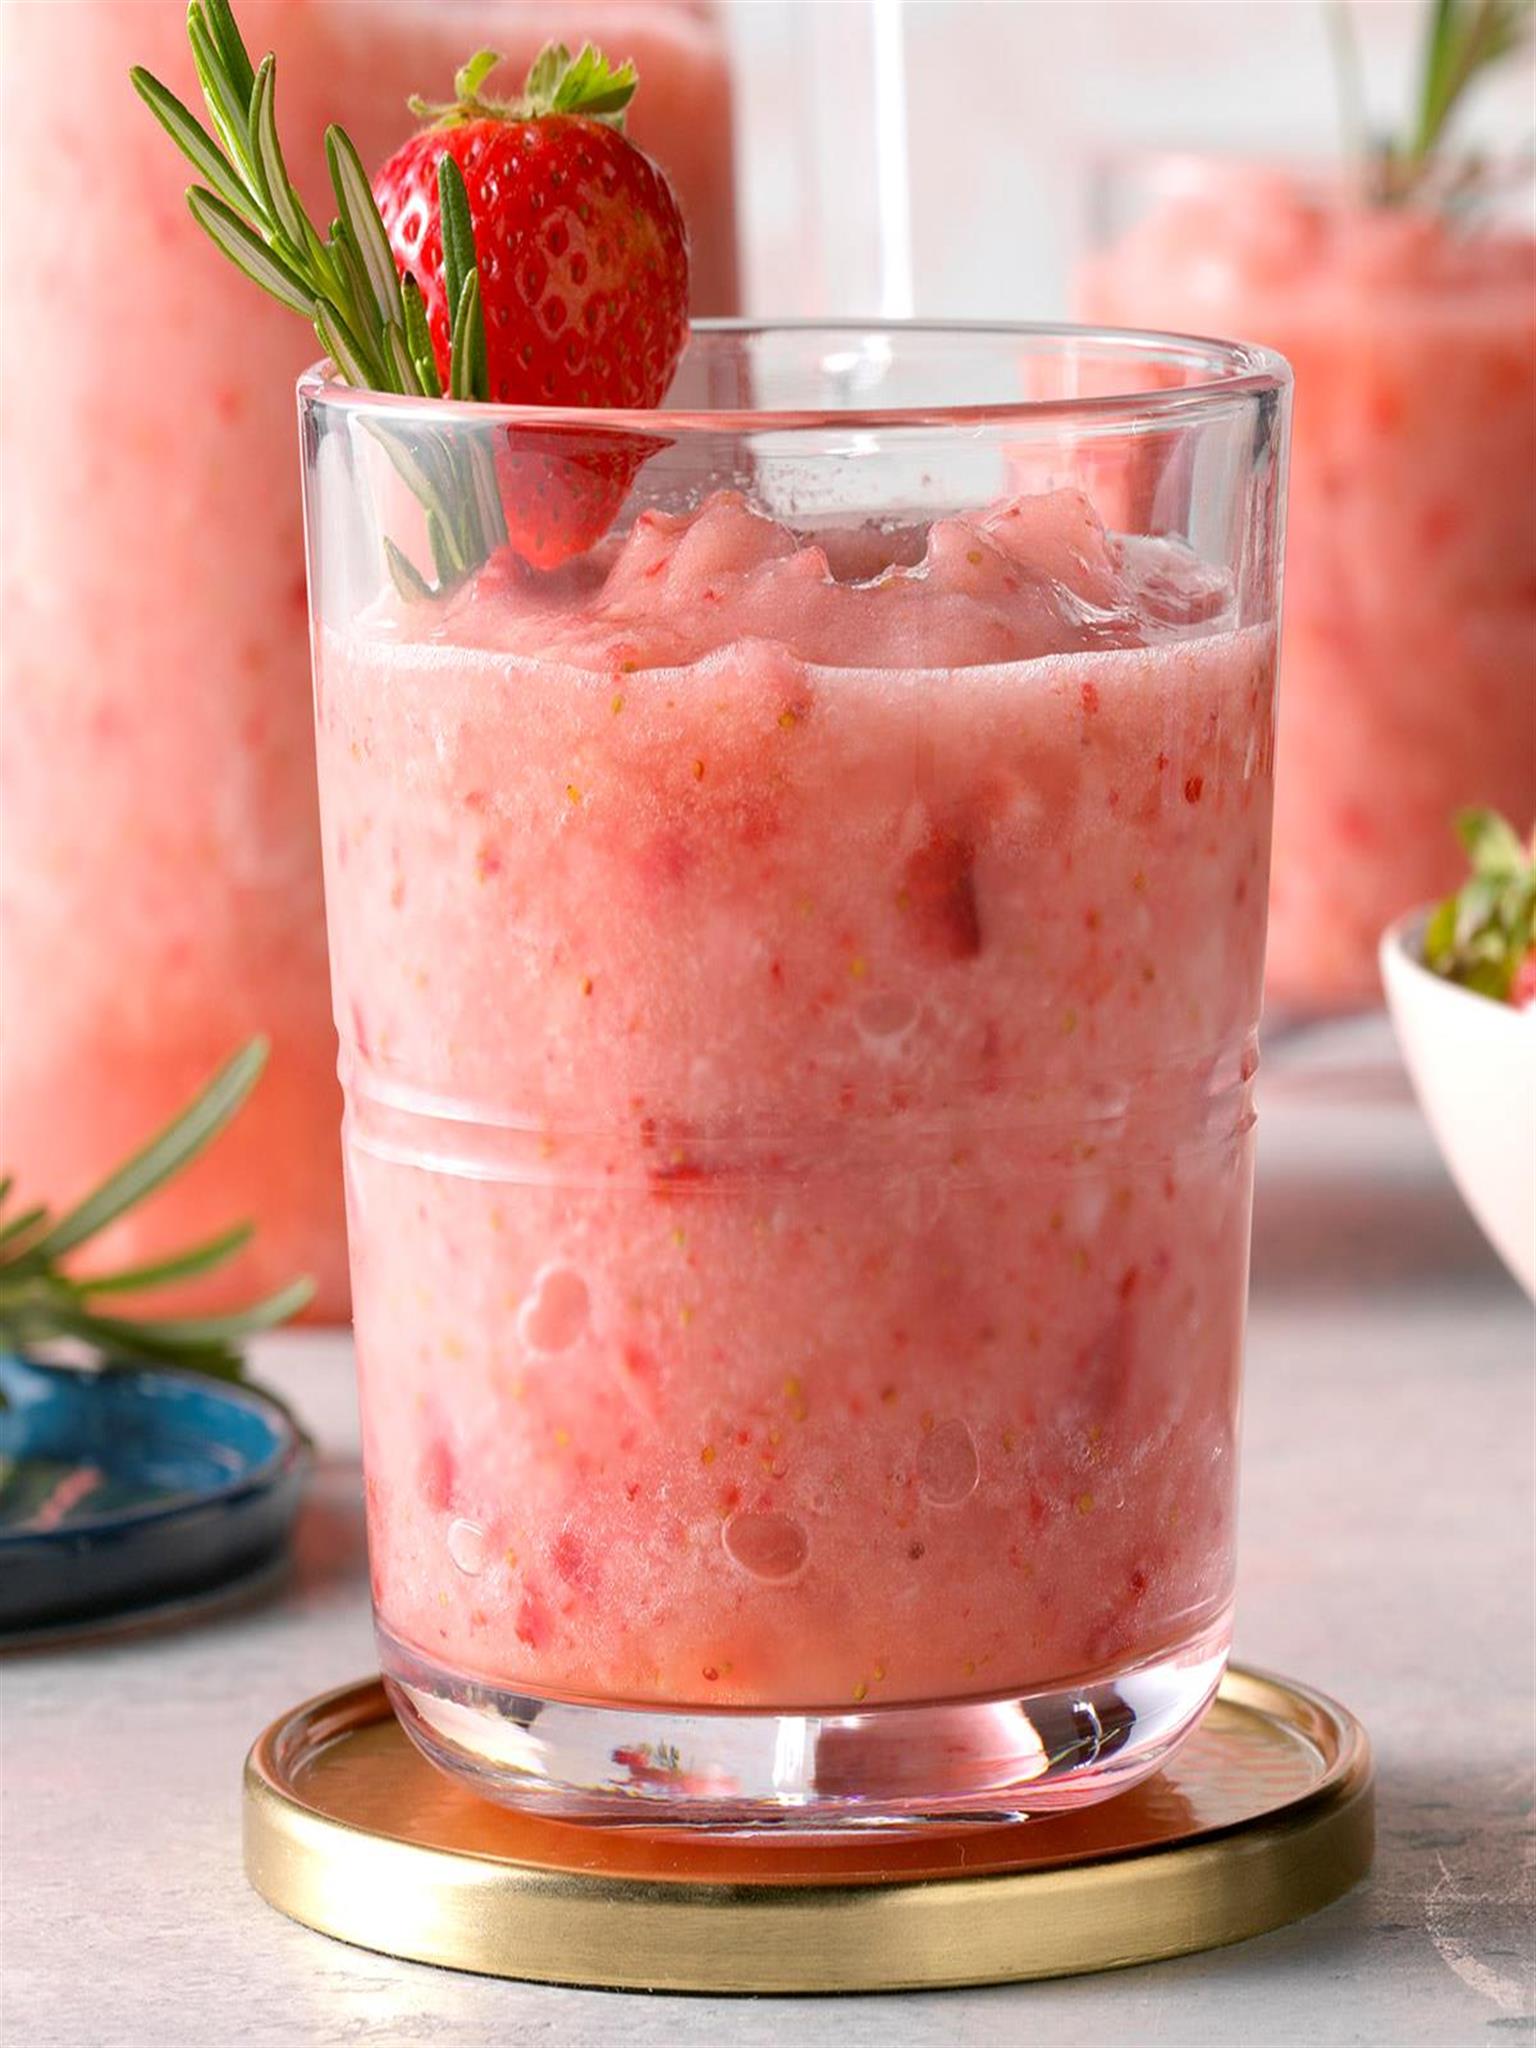 Rosemary Strawberry Daiquiri Recipe: How to Make It